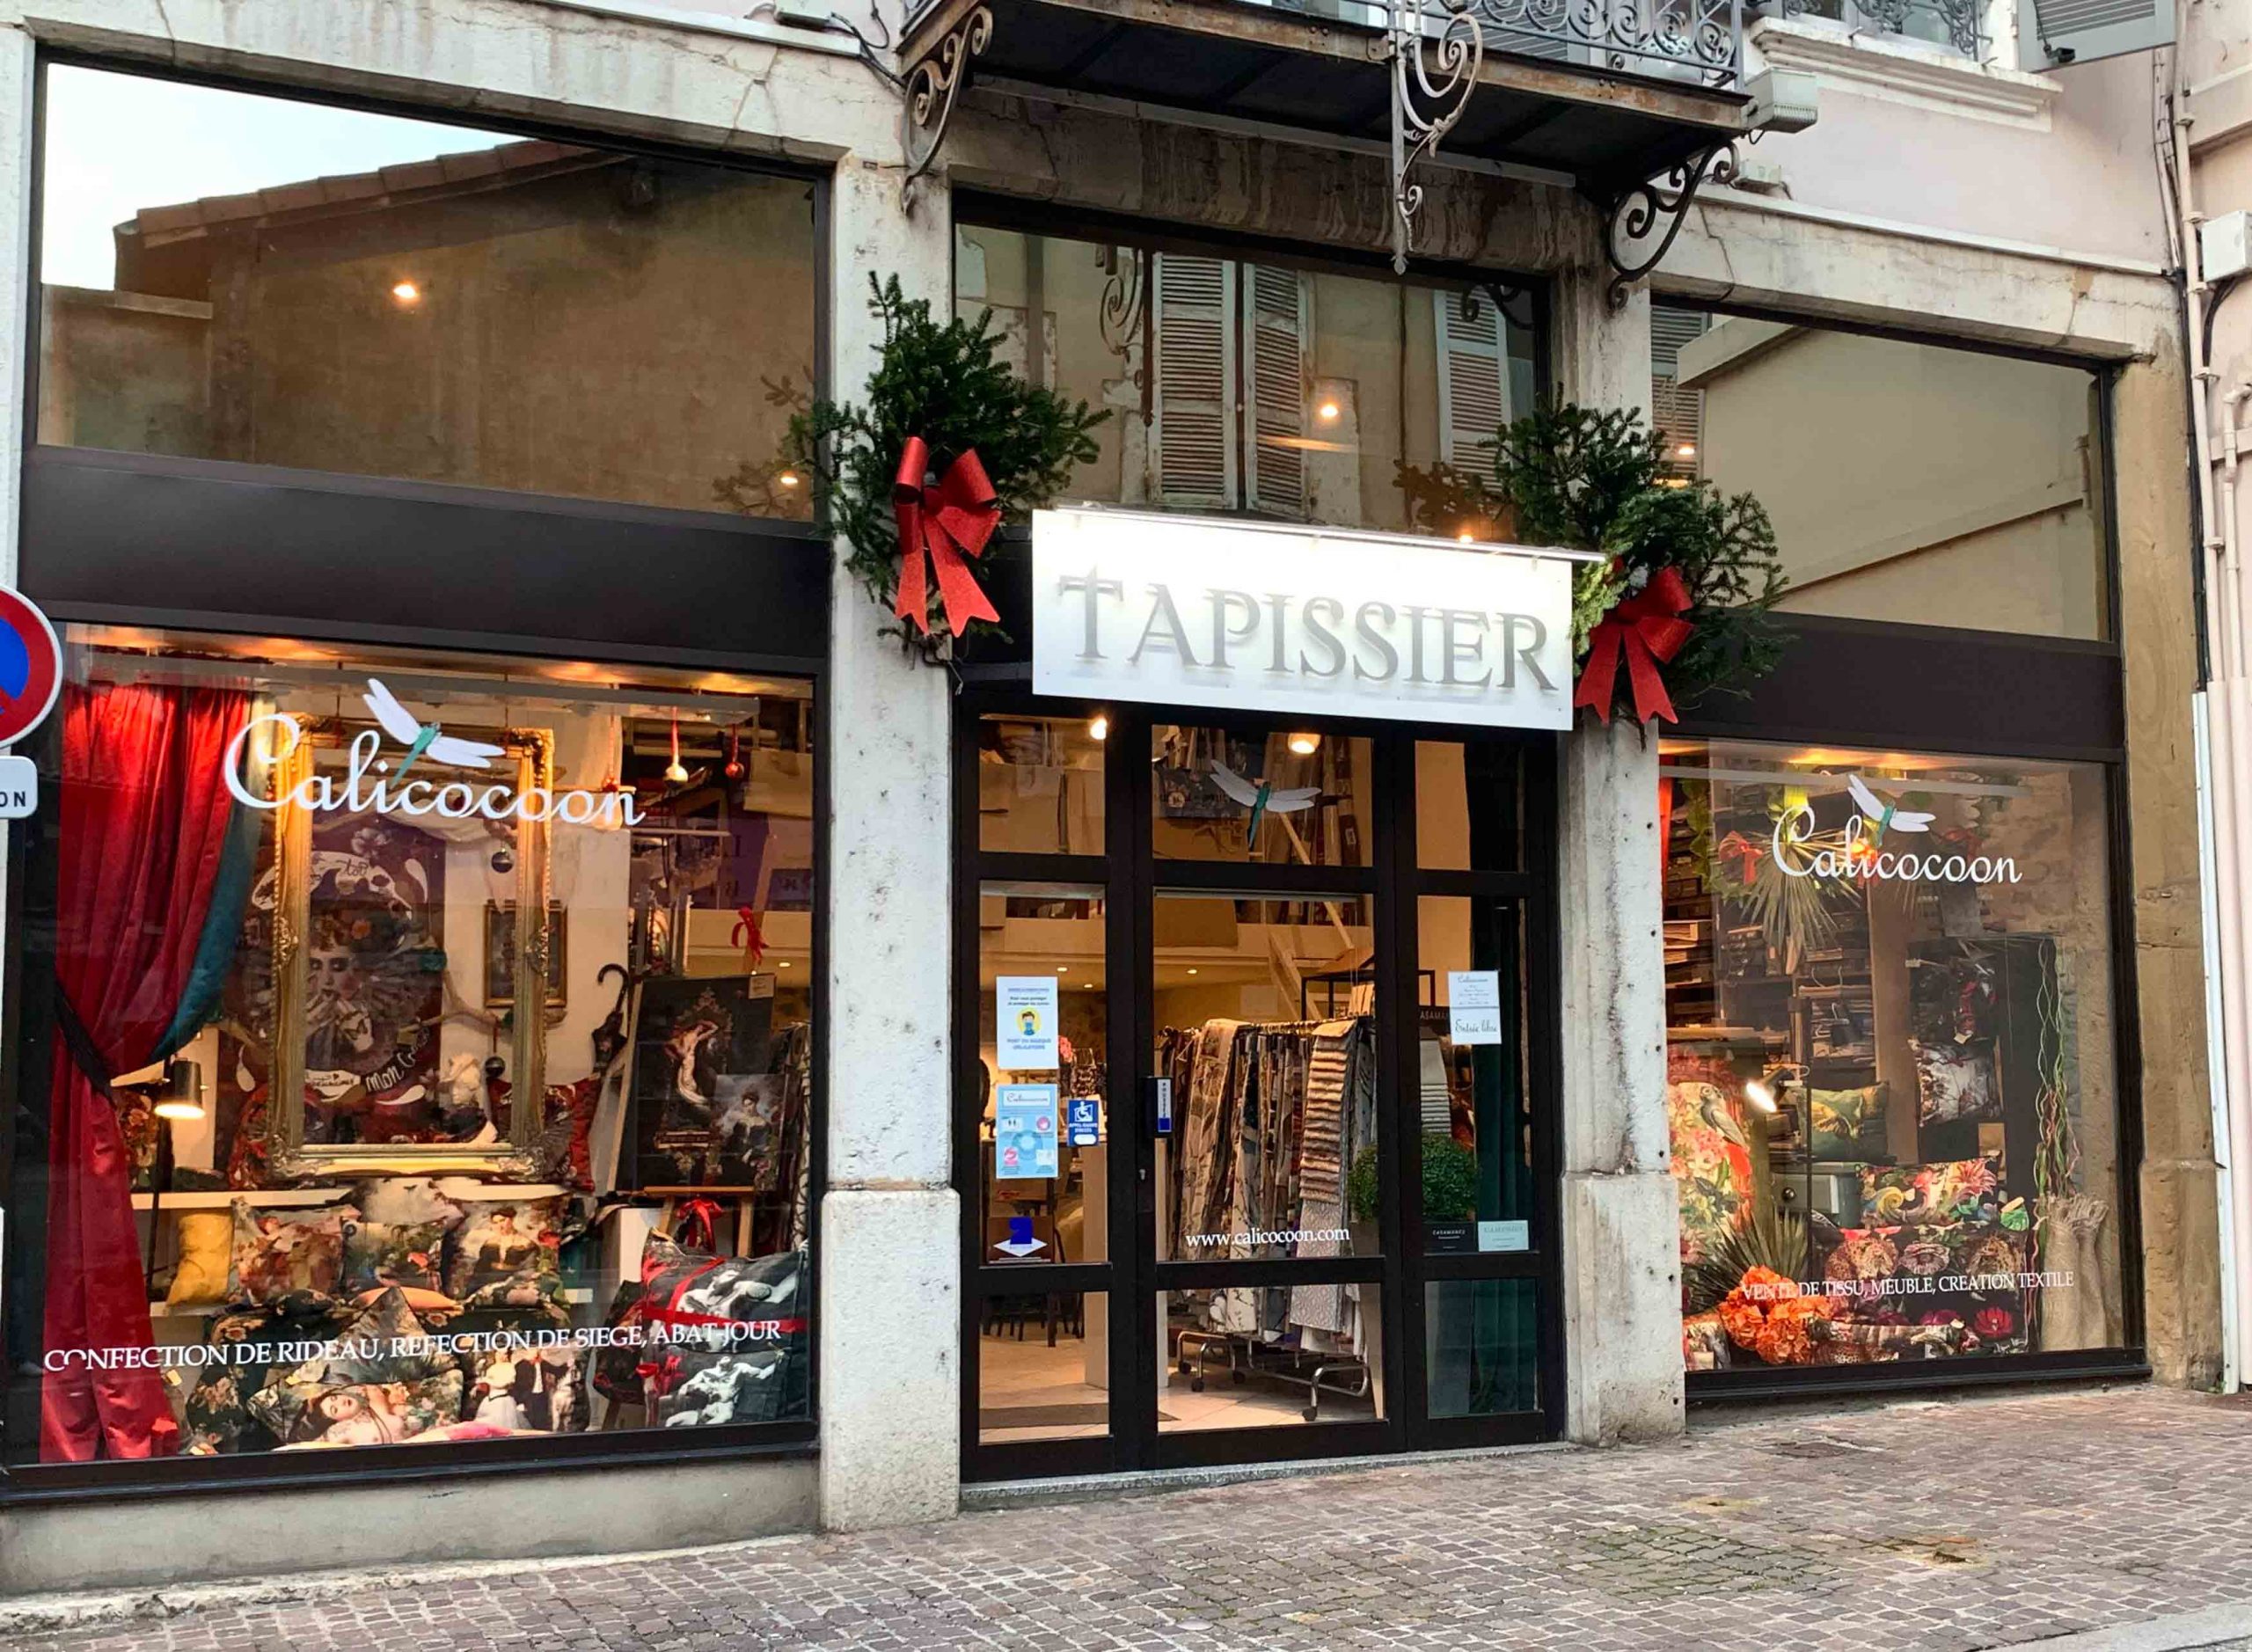 Boutique tapissier Vienne Calicocoon